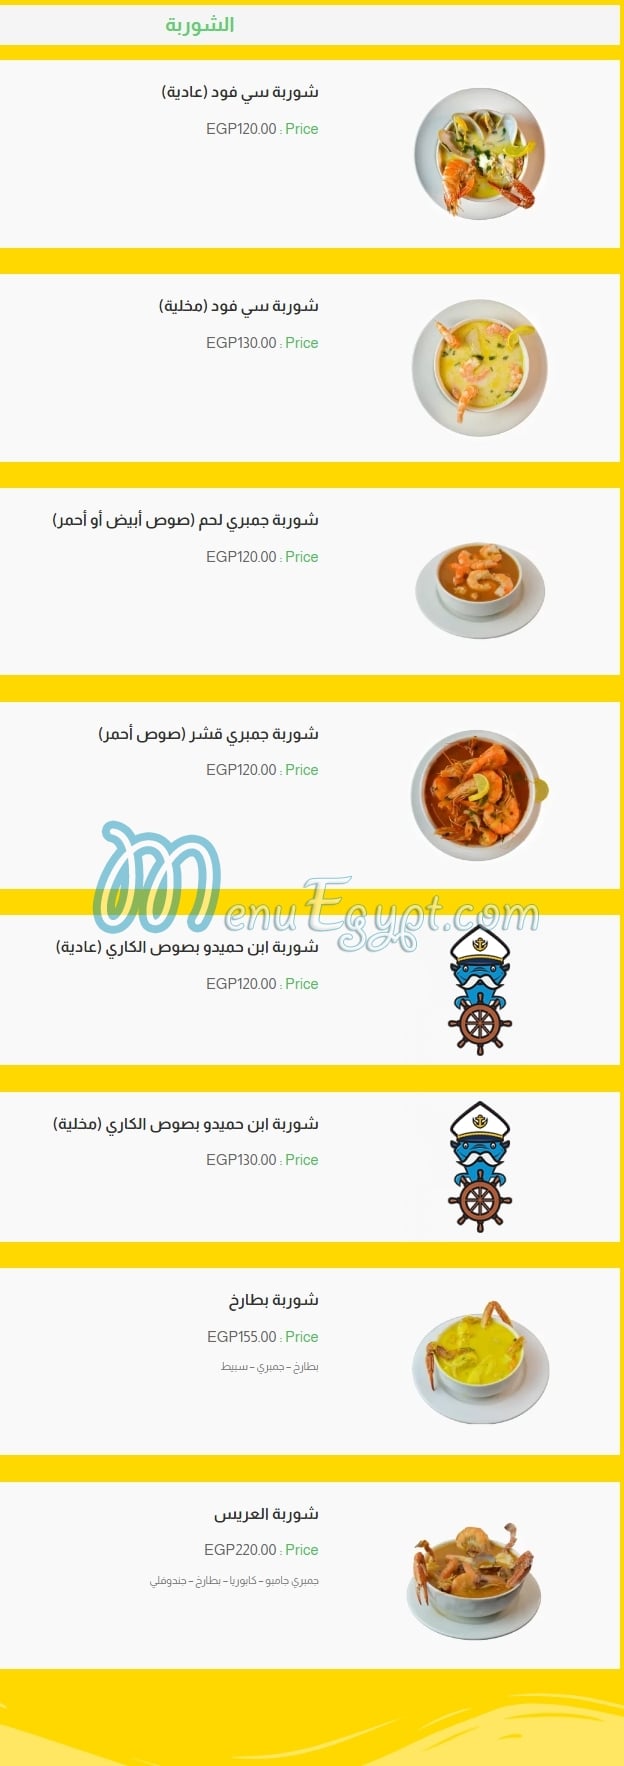 El Rayes Ebn Hamido menu